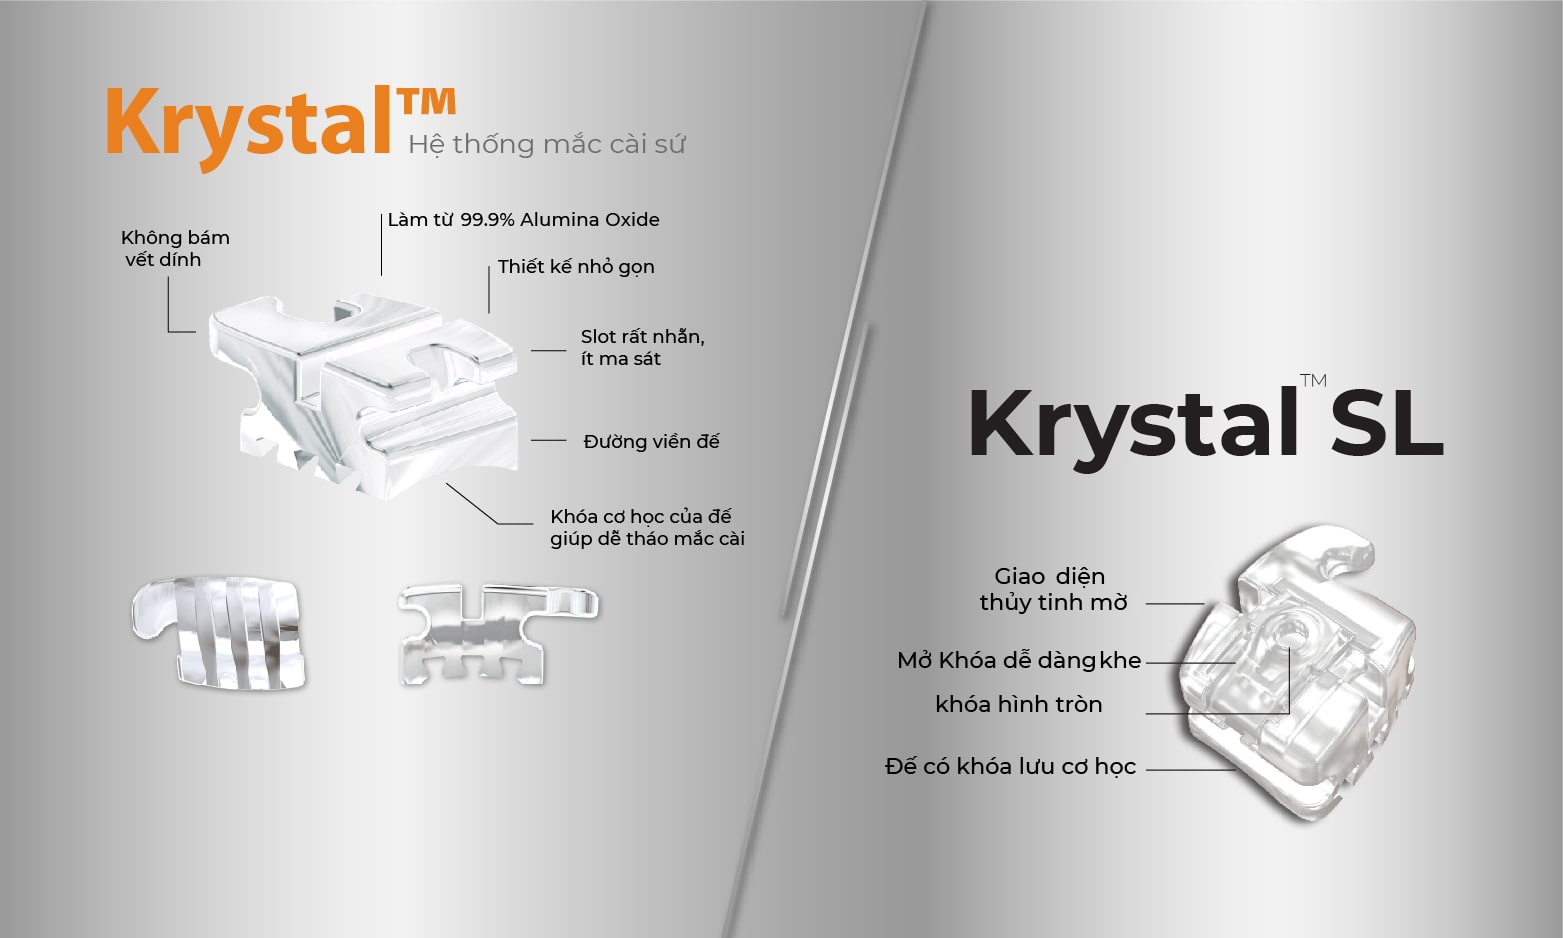 Hệ thống mắc cài sứ và sứ tự buộc Krystal và Krystal SL